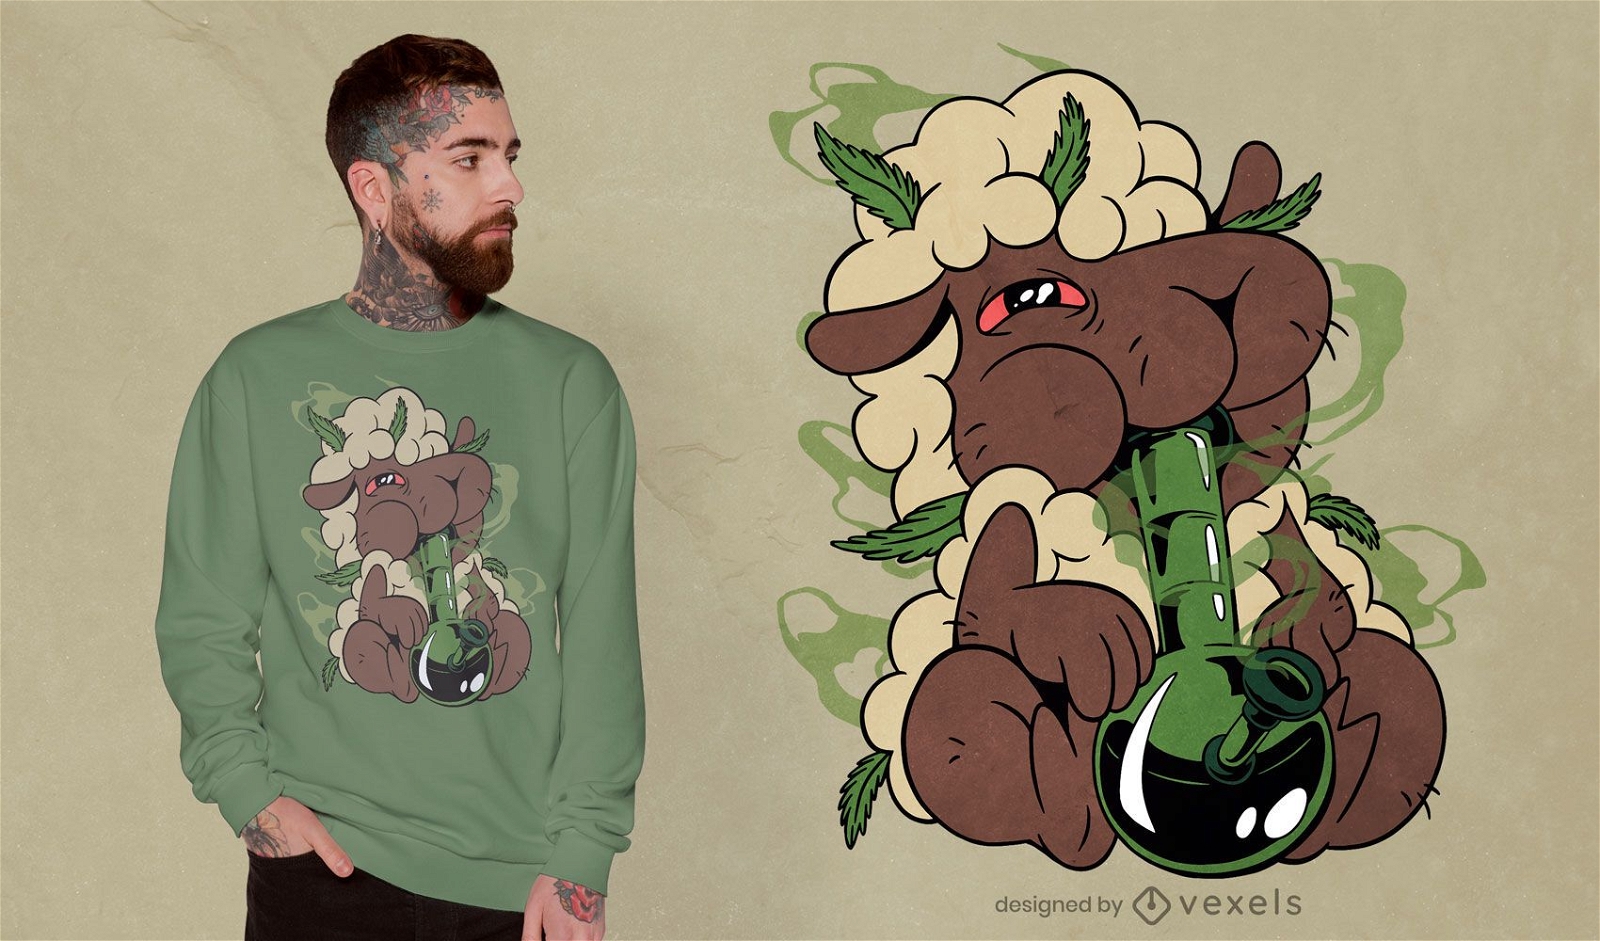 Dise?o de camiseta de oveja alta marihuana.